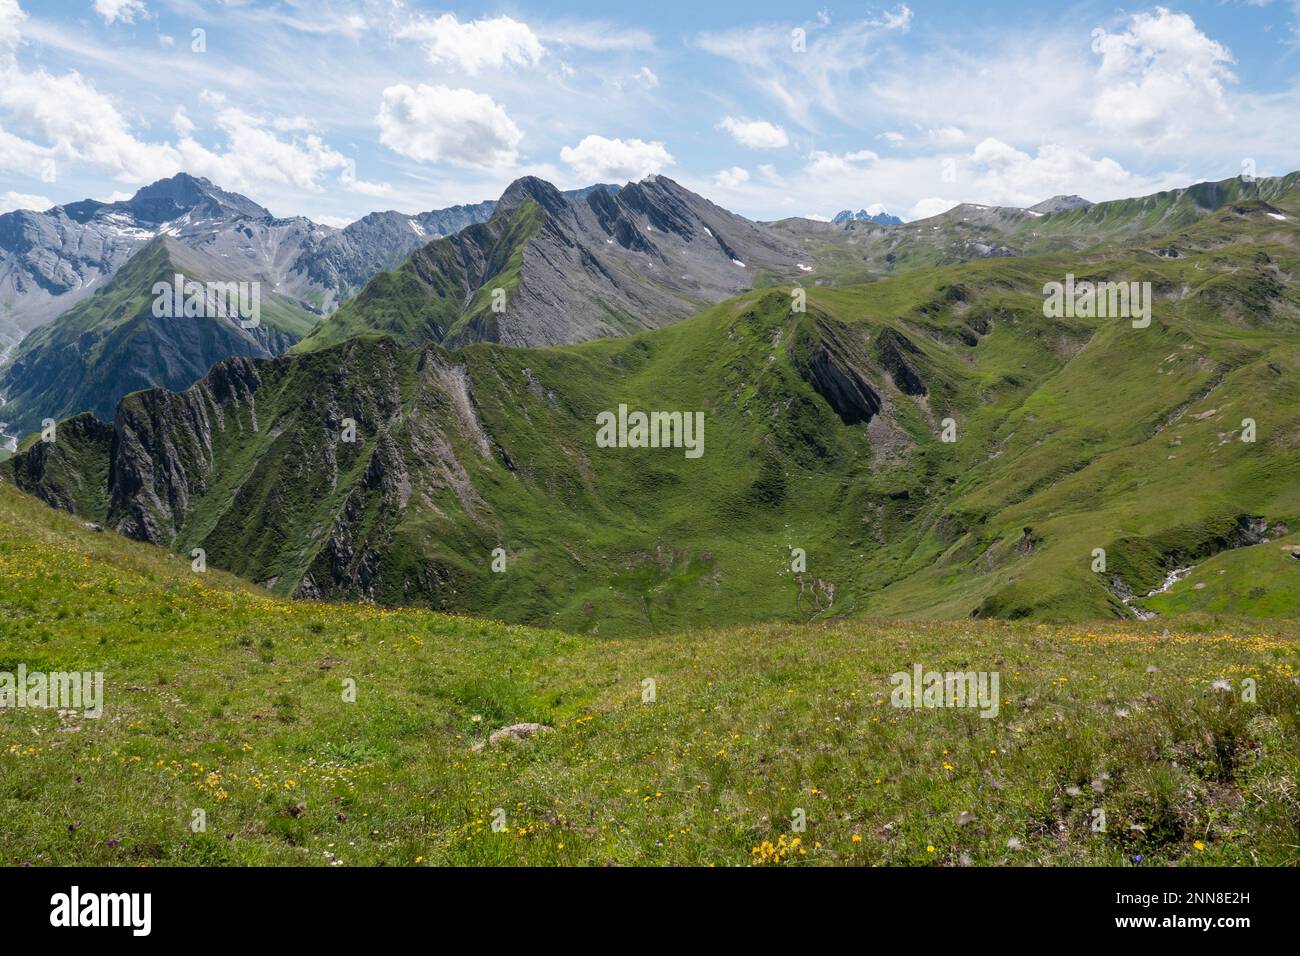 Una vista panoramica sulle Alpi Samnaun con le cime più alte visibili in lontananza. La foto è stata scattata dall'Alp Trida Sattel, Austria. Foto Stock